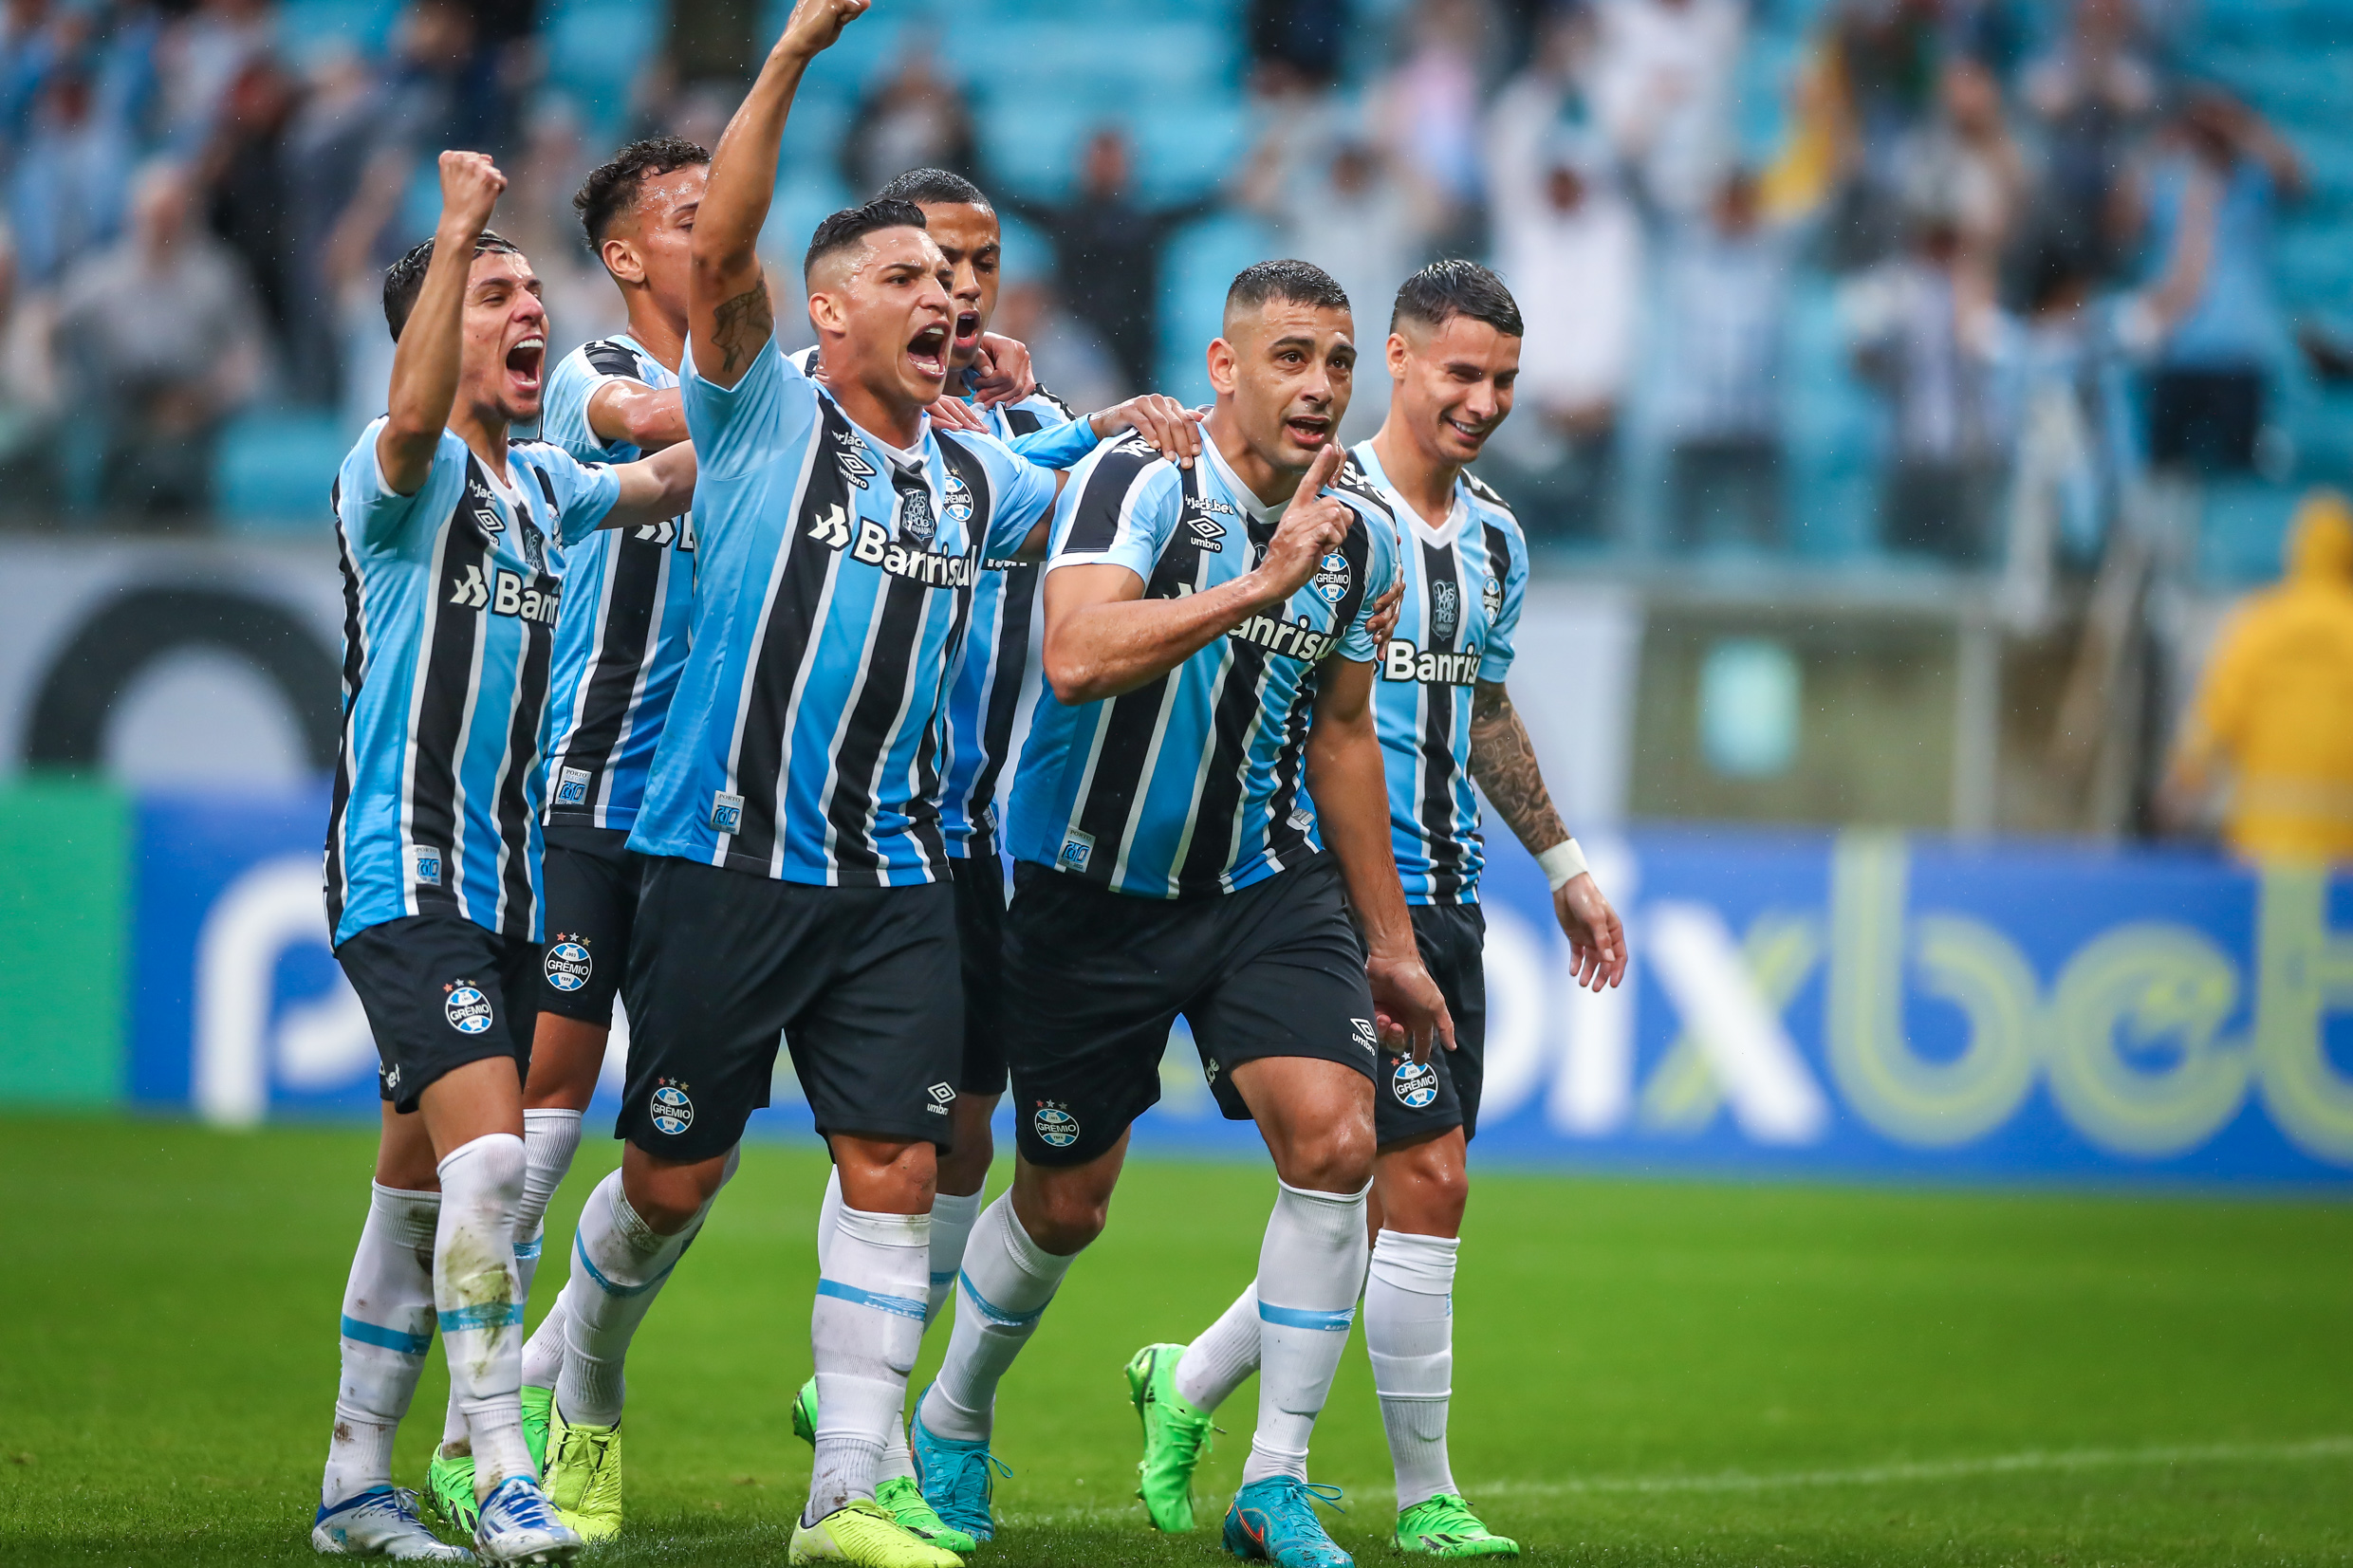 Grêmio faz 3 a 0 no Tombense, completa 12 jogos sem perder e se